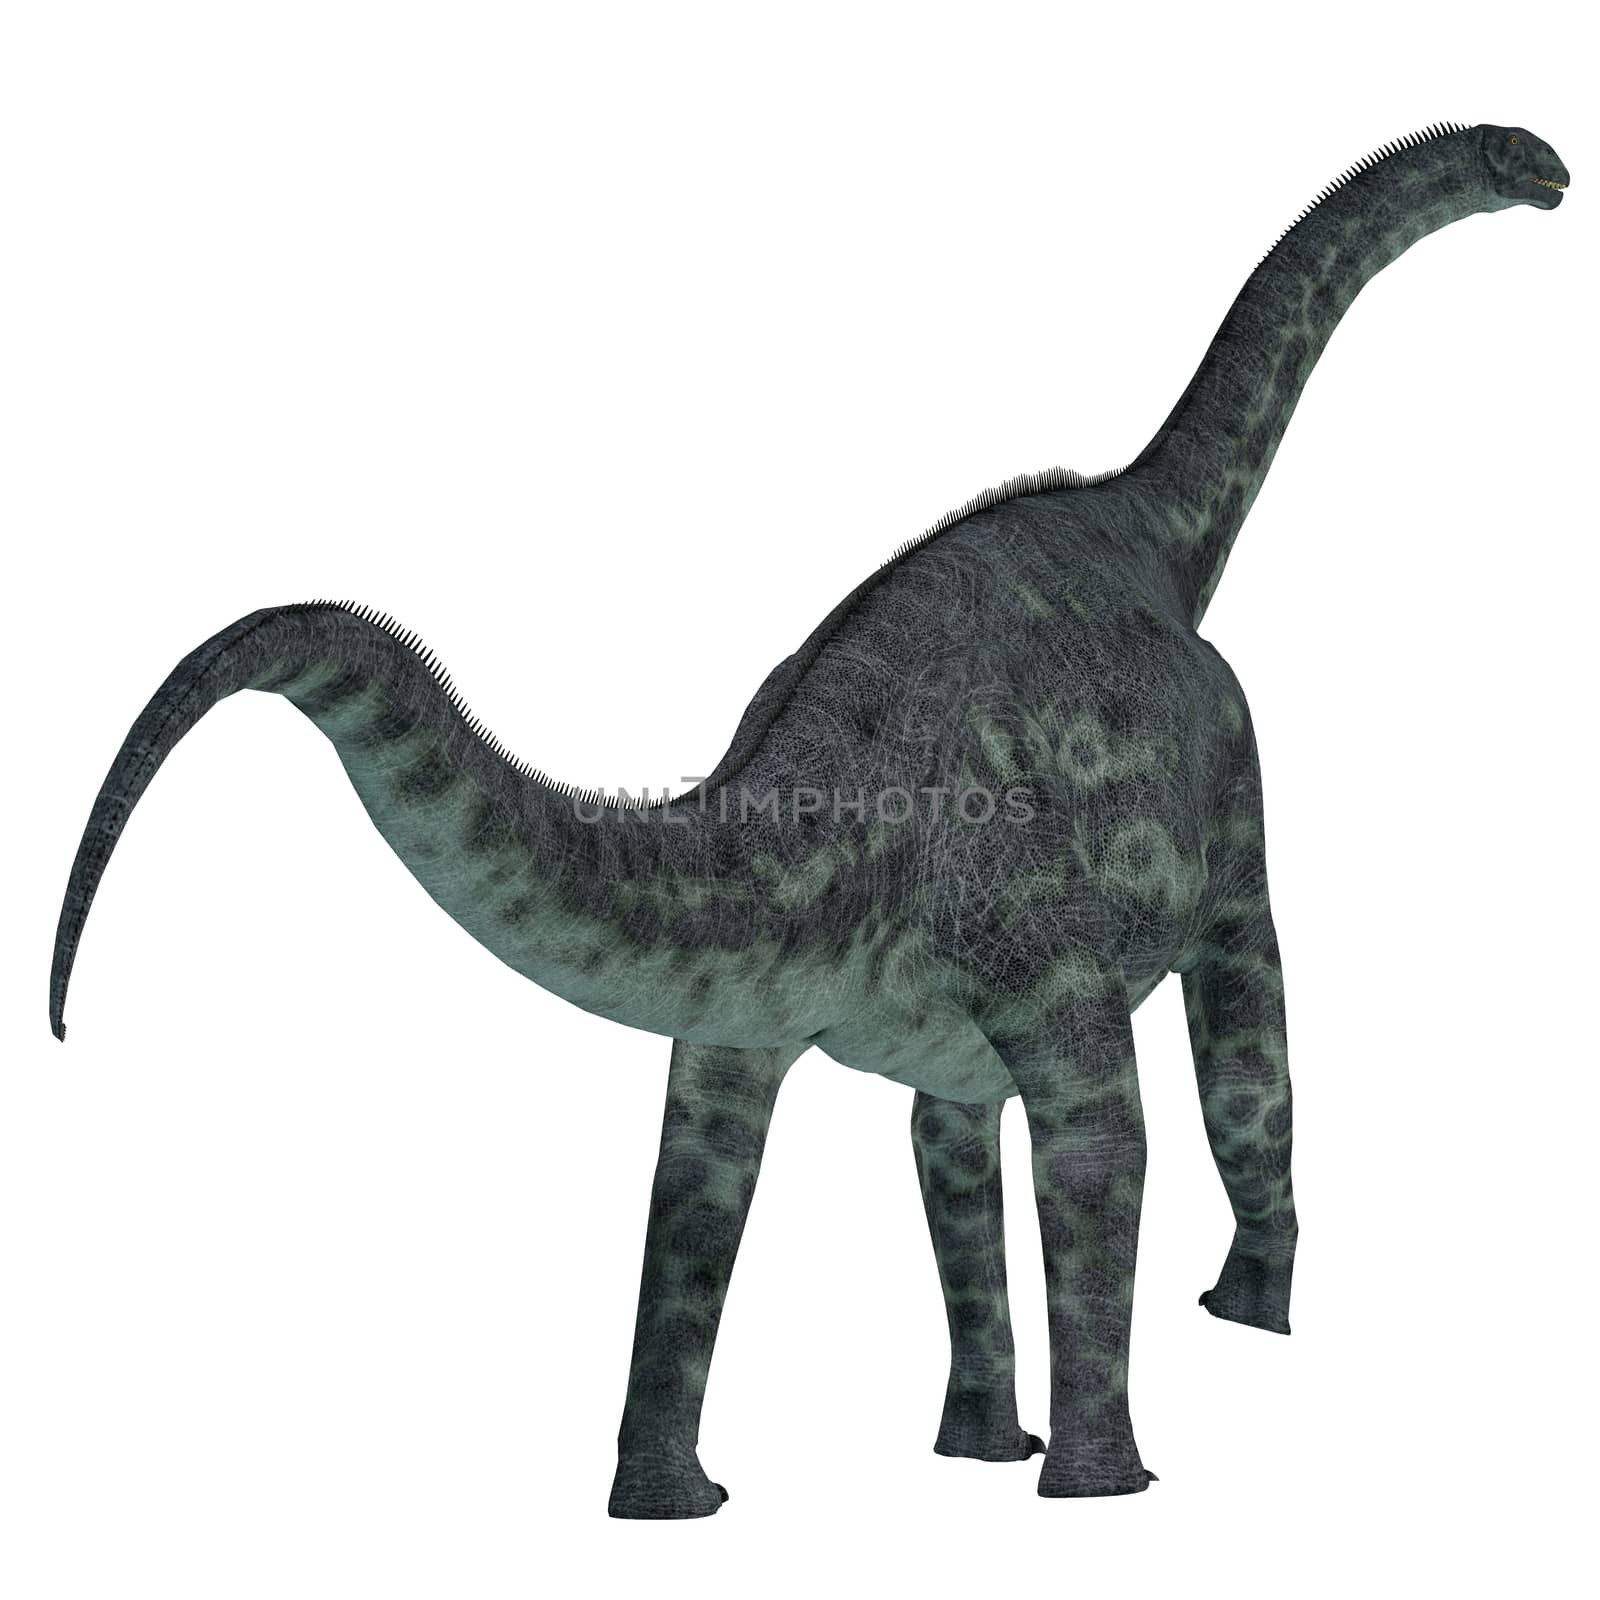 Cetiosaurus Dinosaur Tail by Catmando